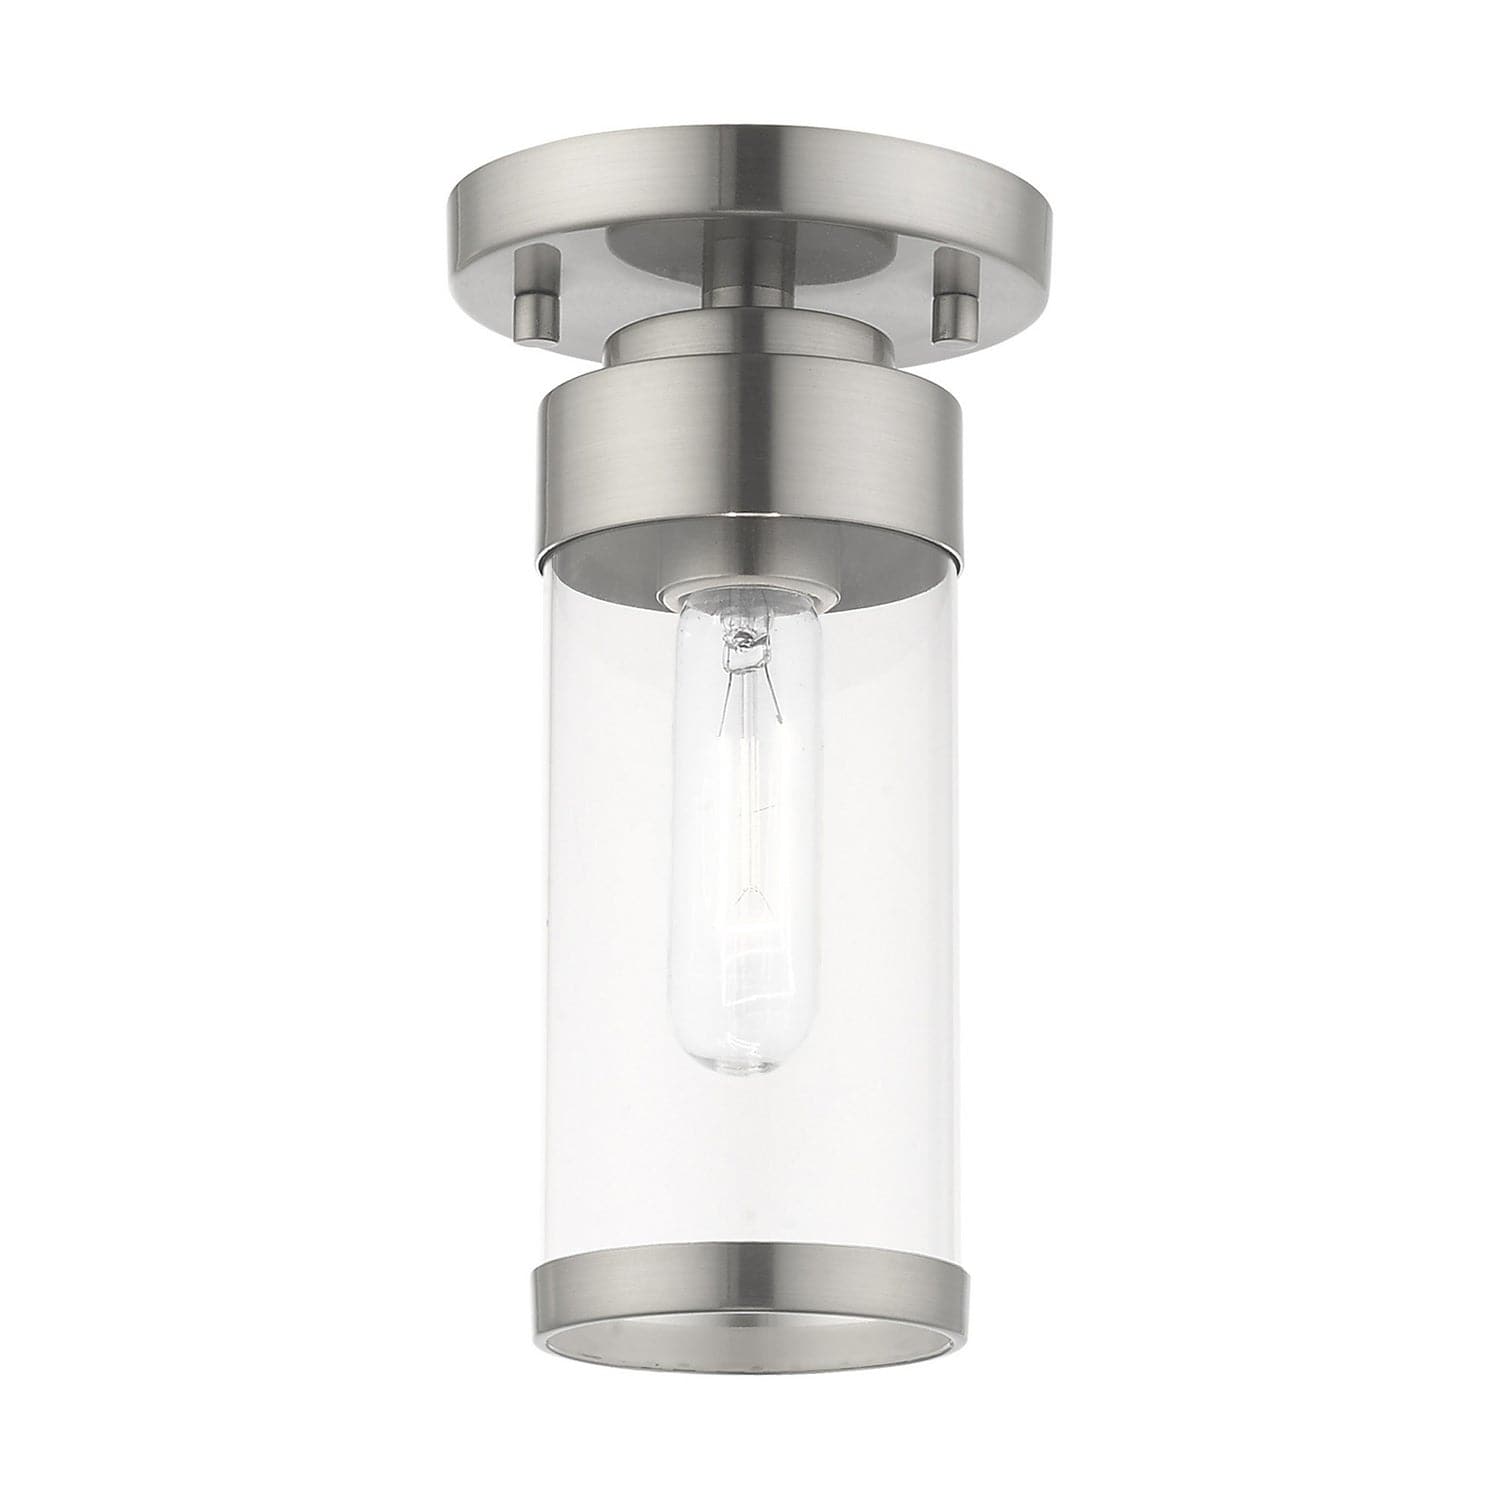 Livex Lighting - 40480-91 - One Light Ceiling Mount - Hillcrest - Brushed Nickel